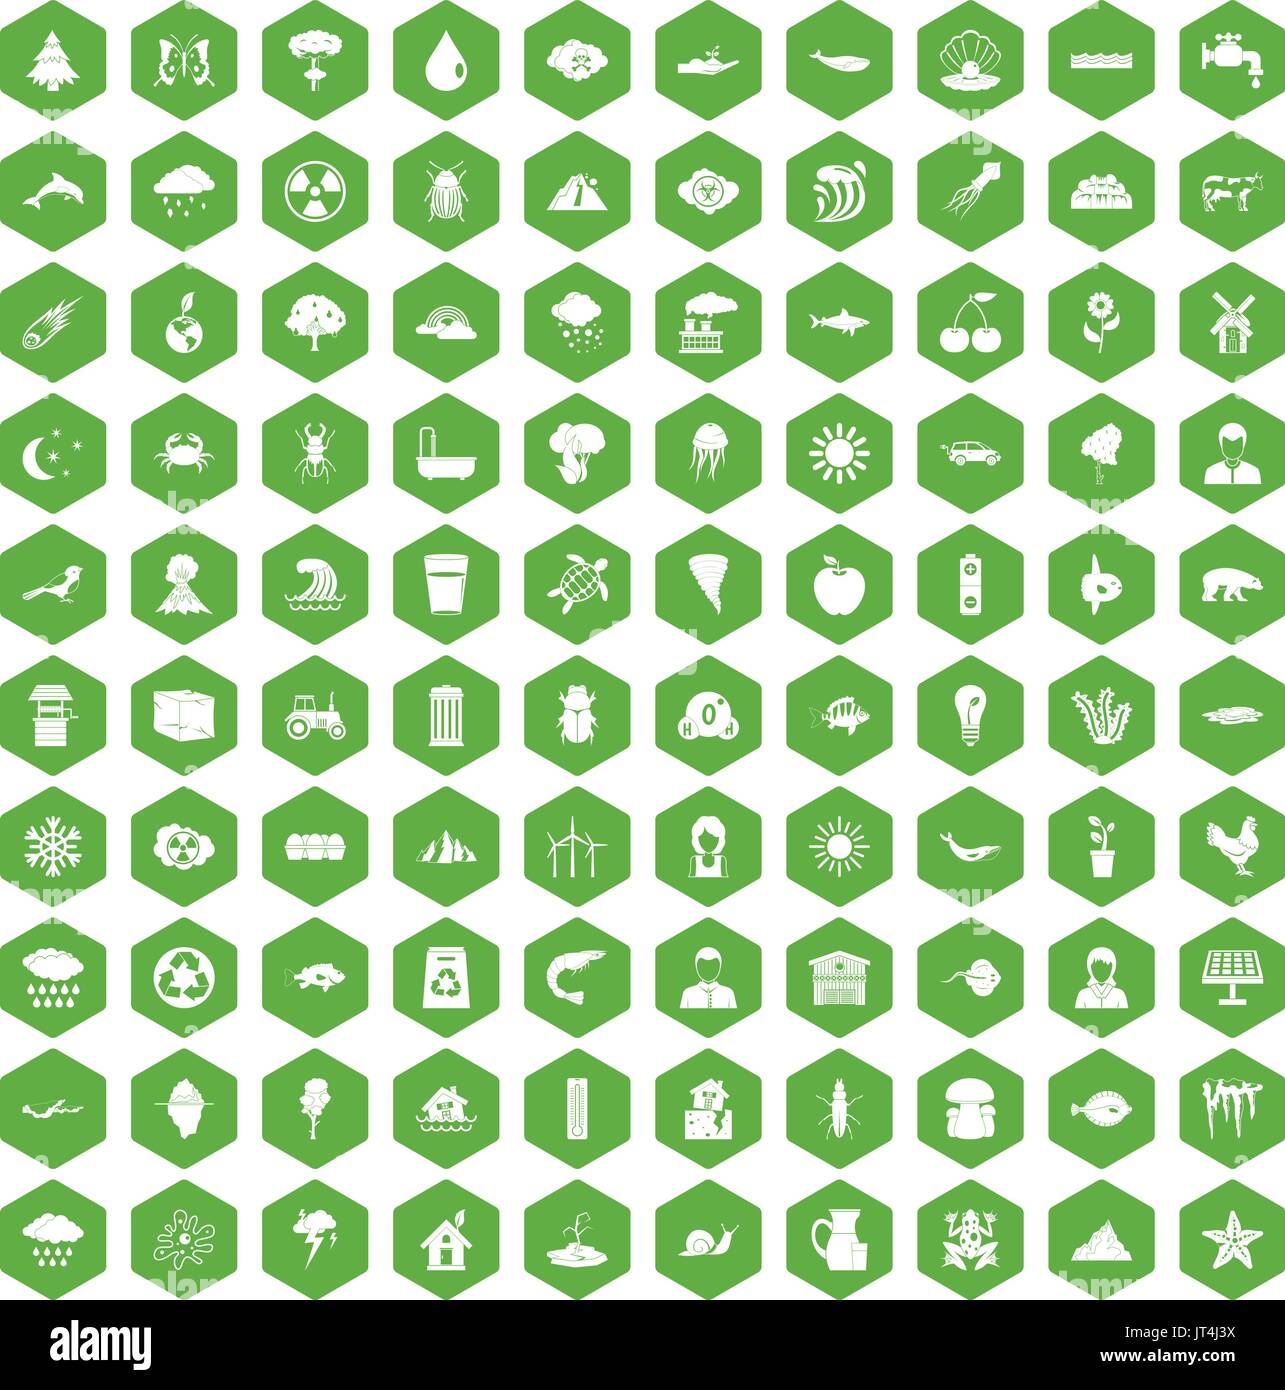 100 earth icons hexagon green Stock Vector